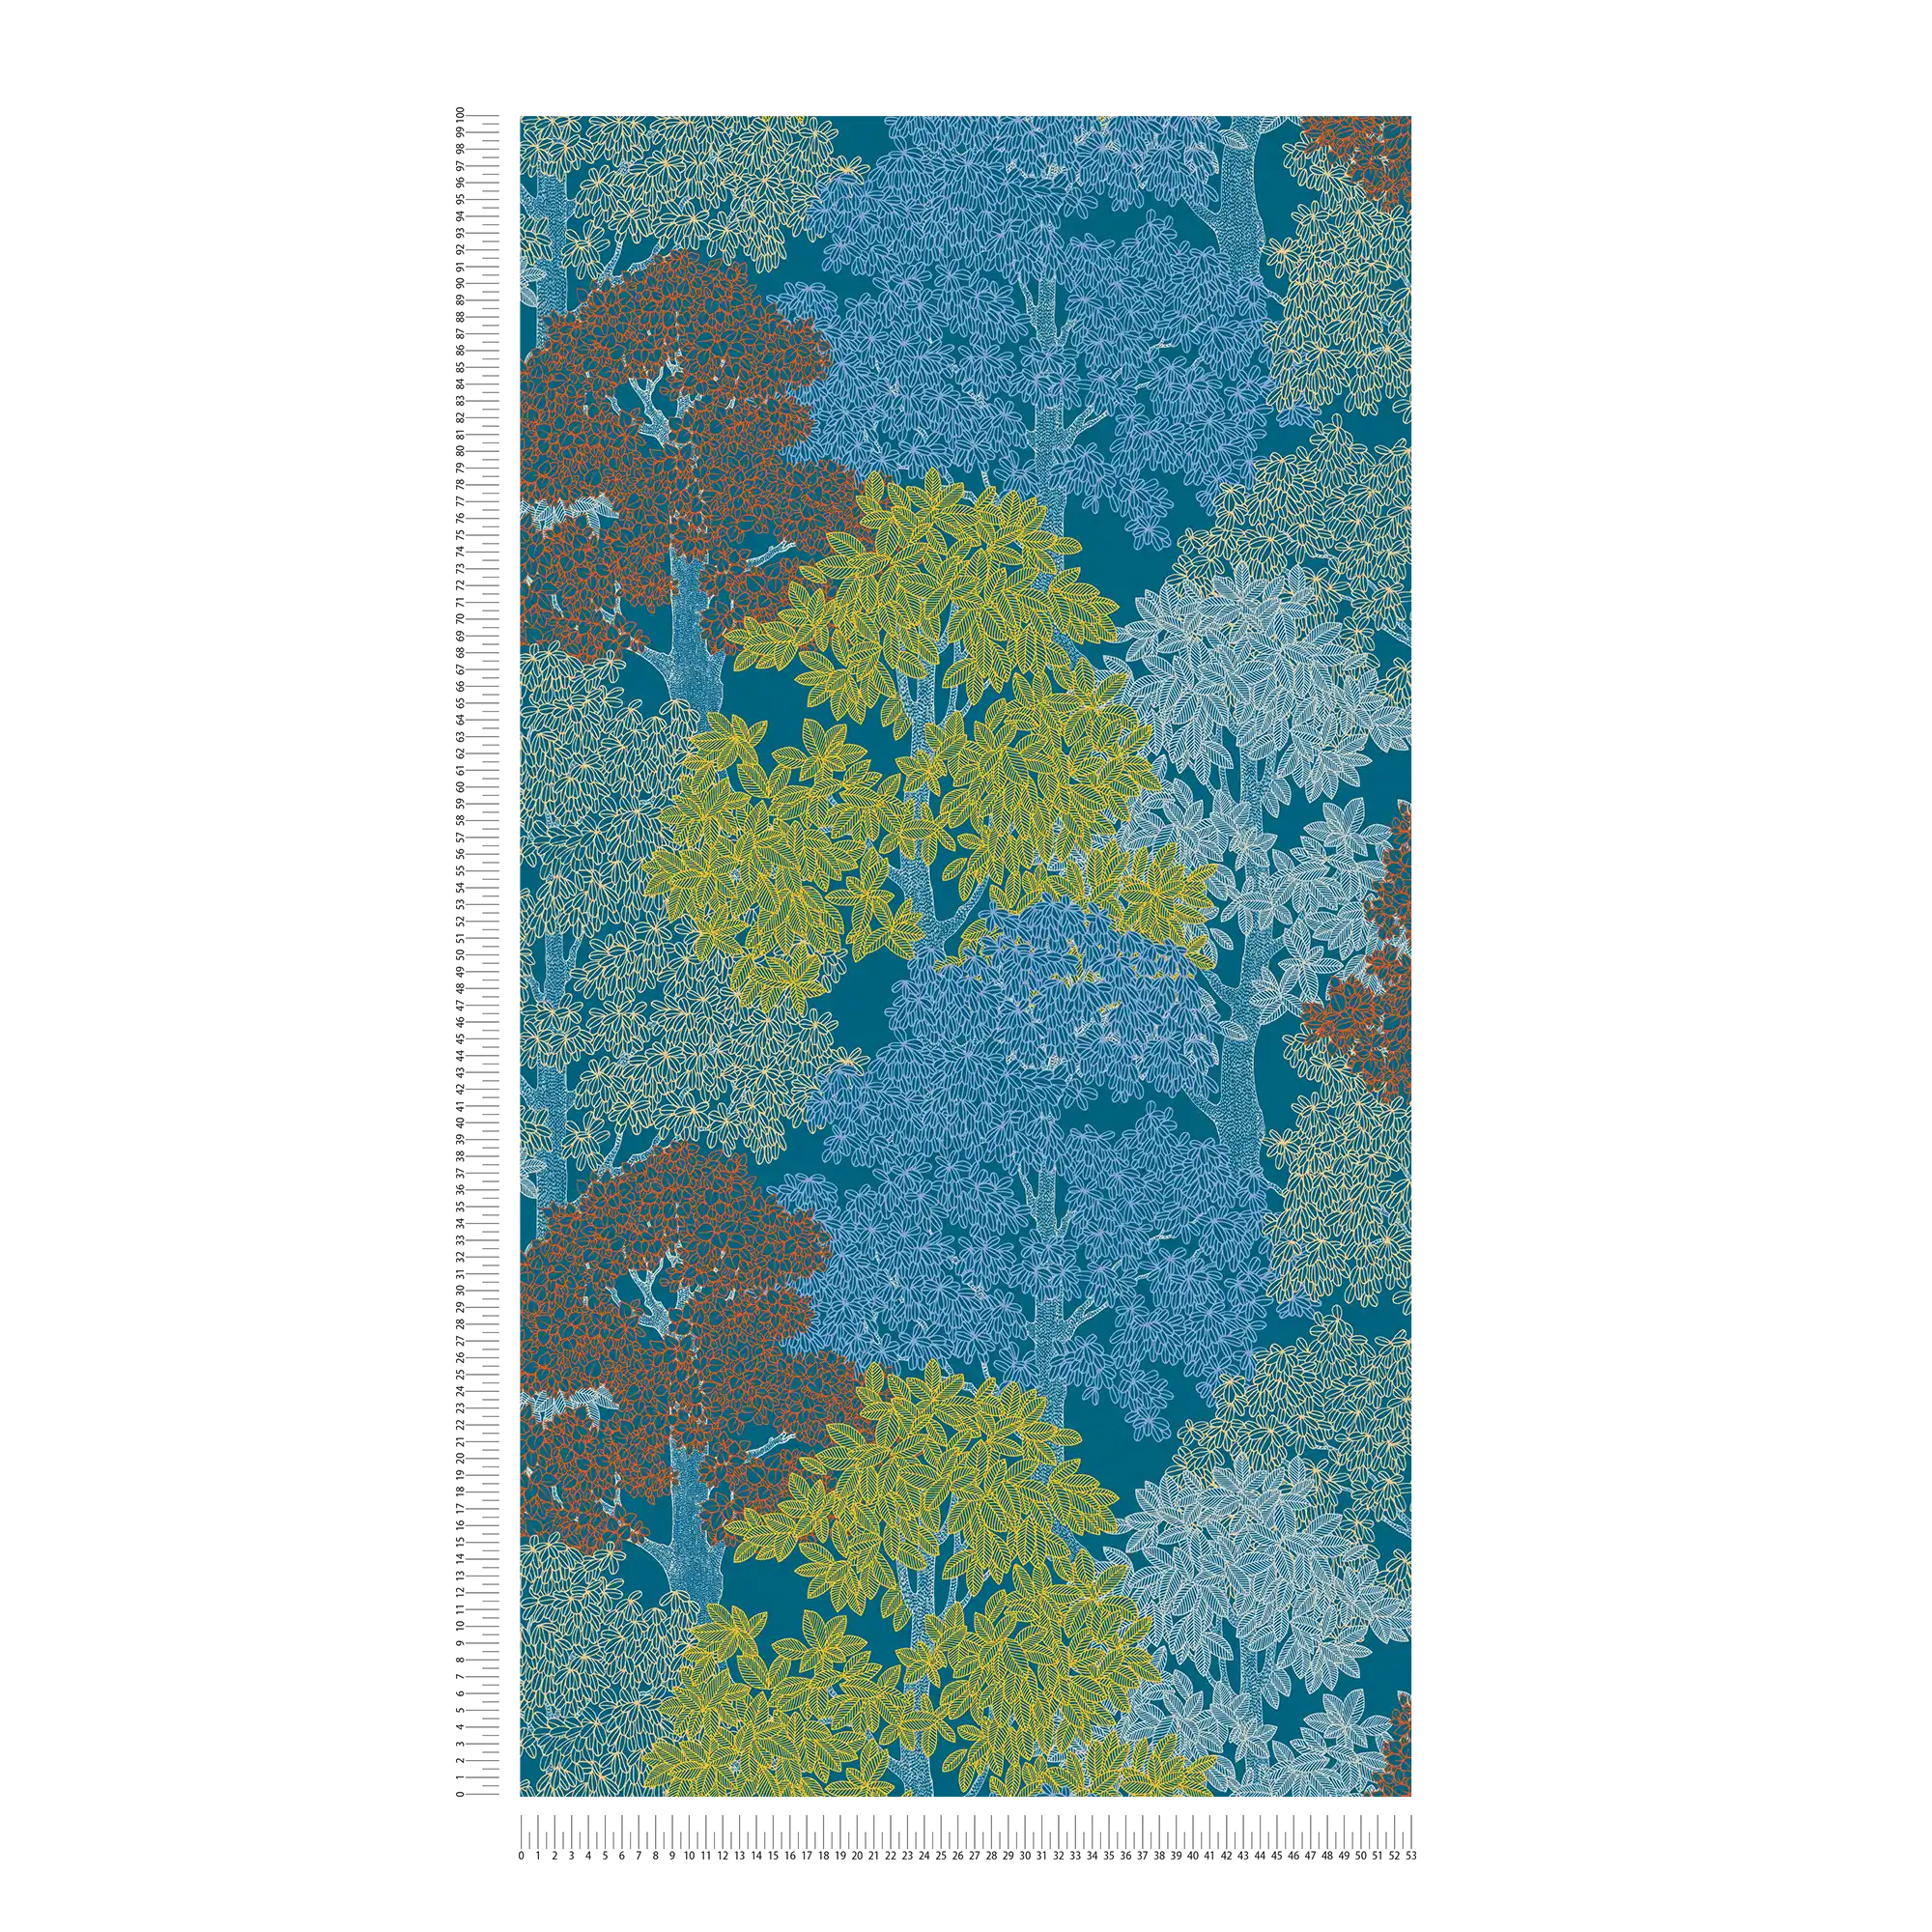             Carta da parati in stile scandinavo con motivi di alberi - blu, giallo, rosso
        